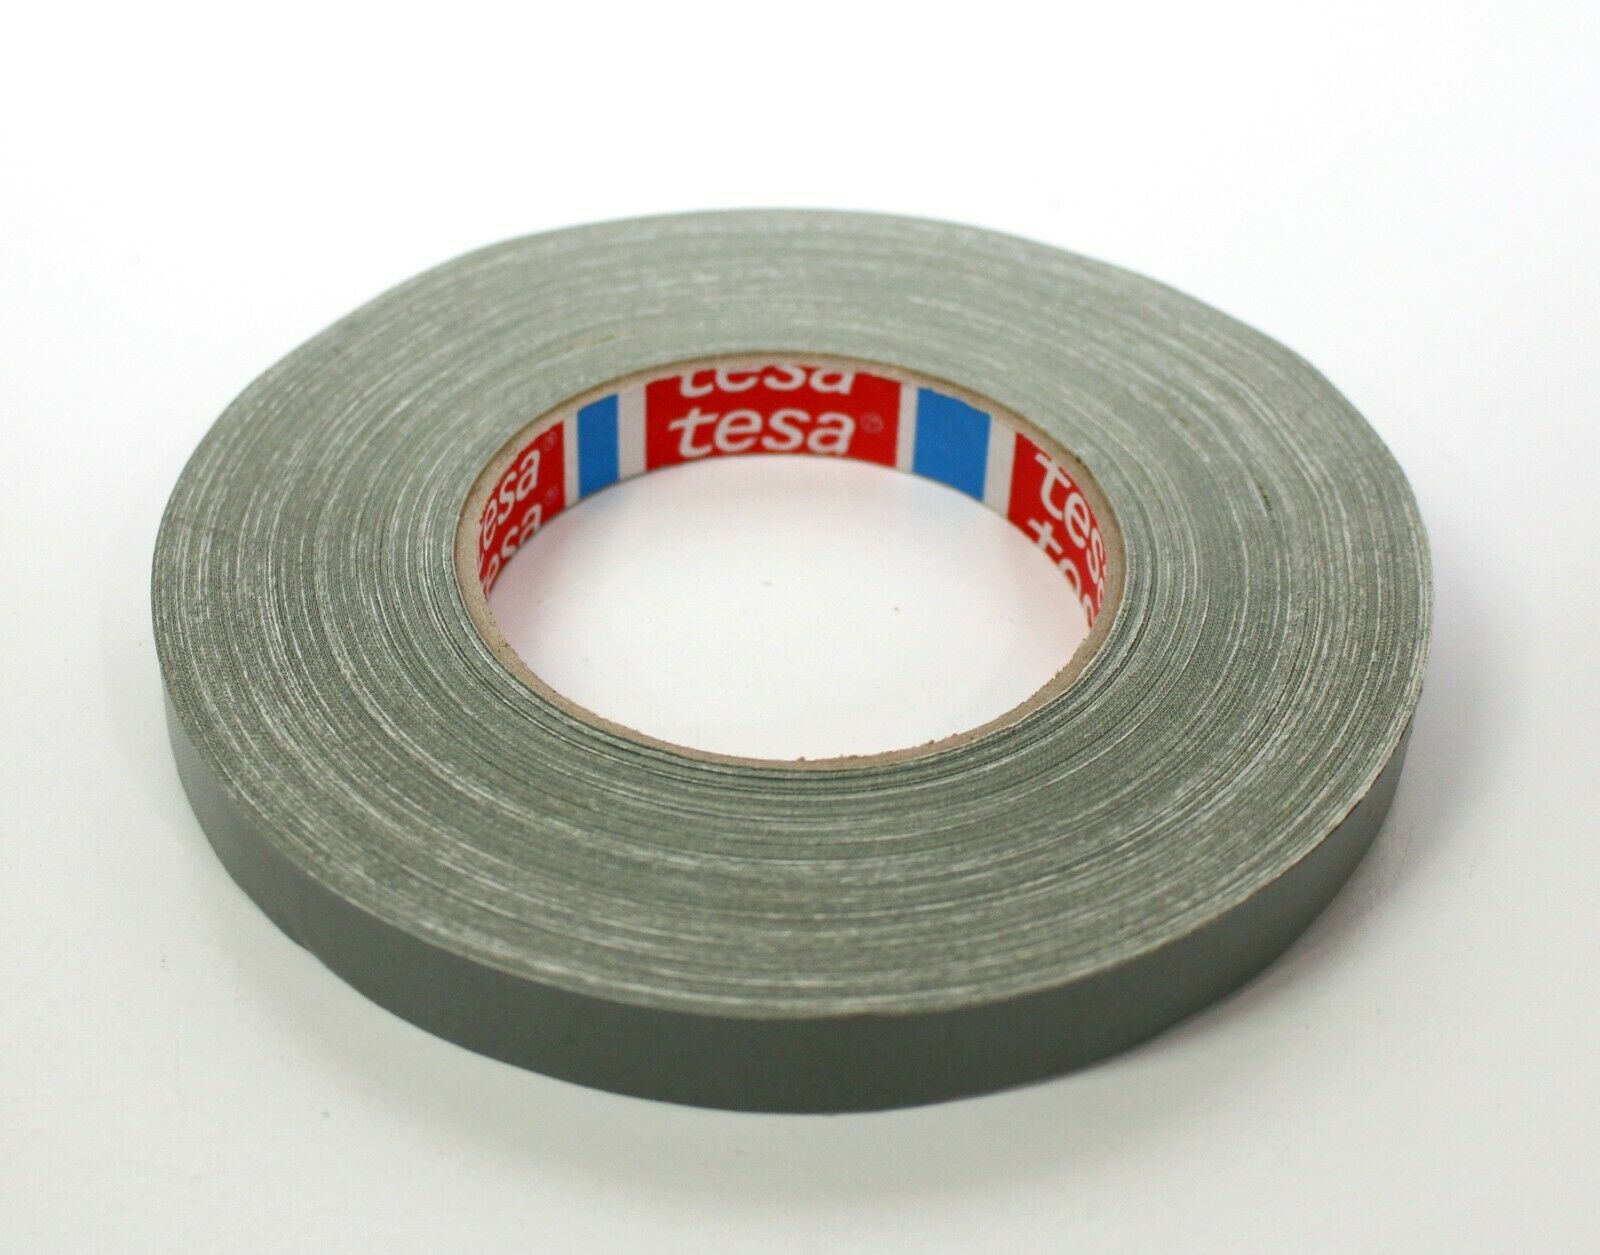 TESA 4657 Cinta adhesiva de tela resistente a altas temperaturas 5/8 "15 mm de ancho - 55 yardas